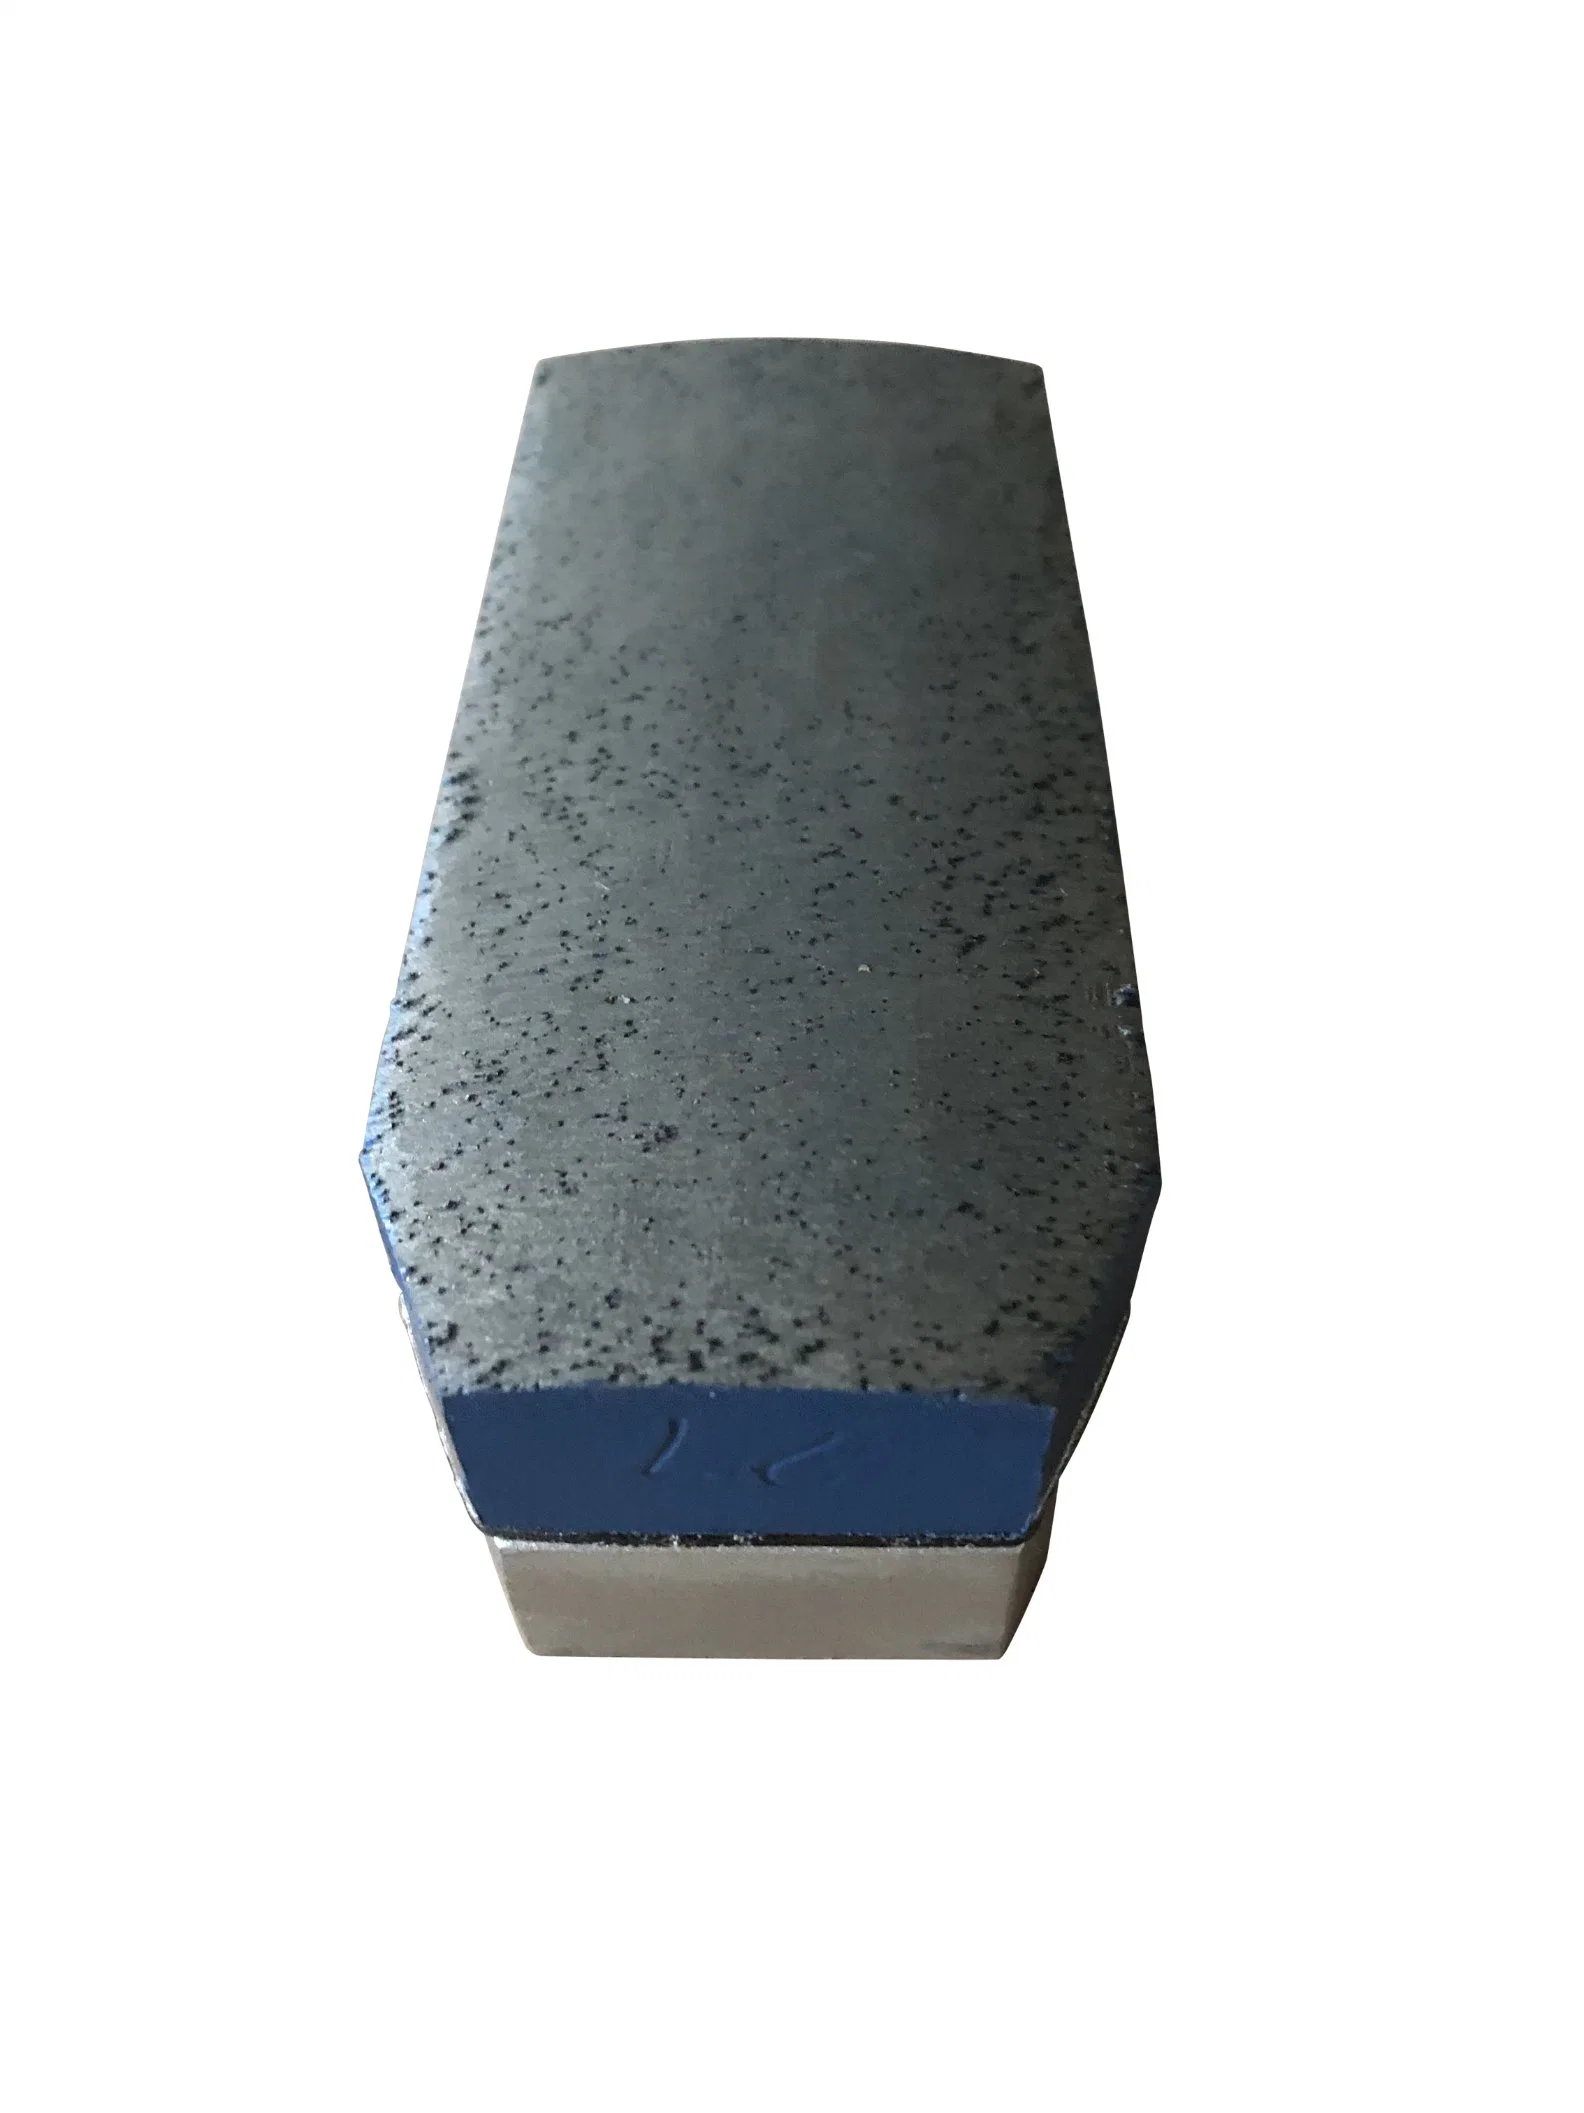 Алмазный шлифовальный блок, металлические связные абразивы, инструменты для полировки камня